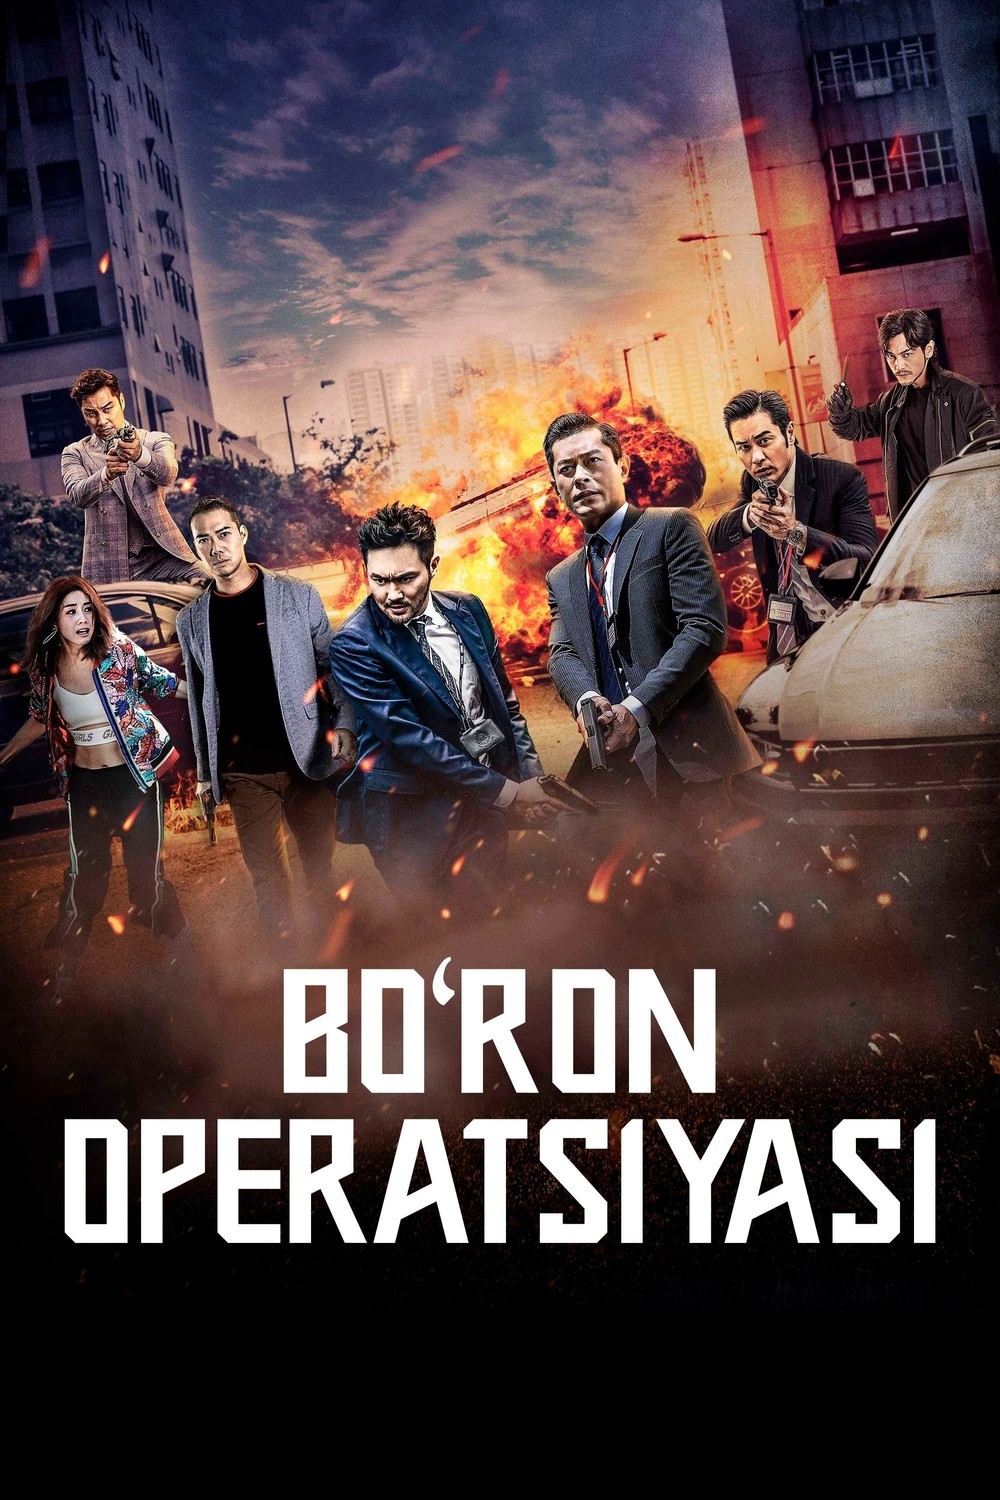 Bo'ron operatsiyasi / Shtorm L Gongkong filmi Uzbek tilida O'zbekcha tarjima kino 2018 Full HD